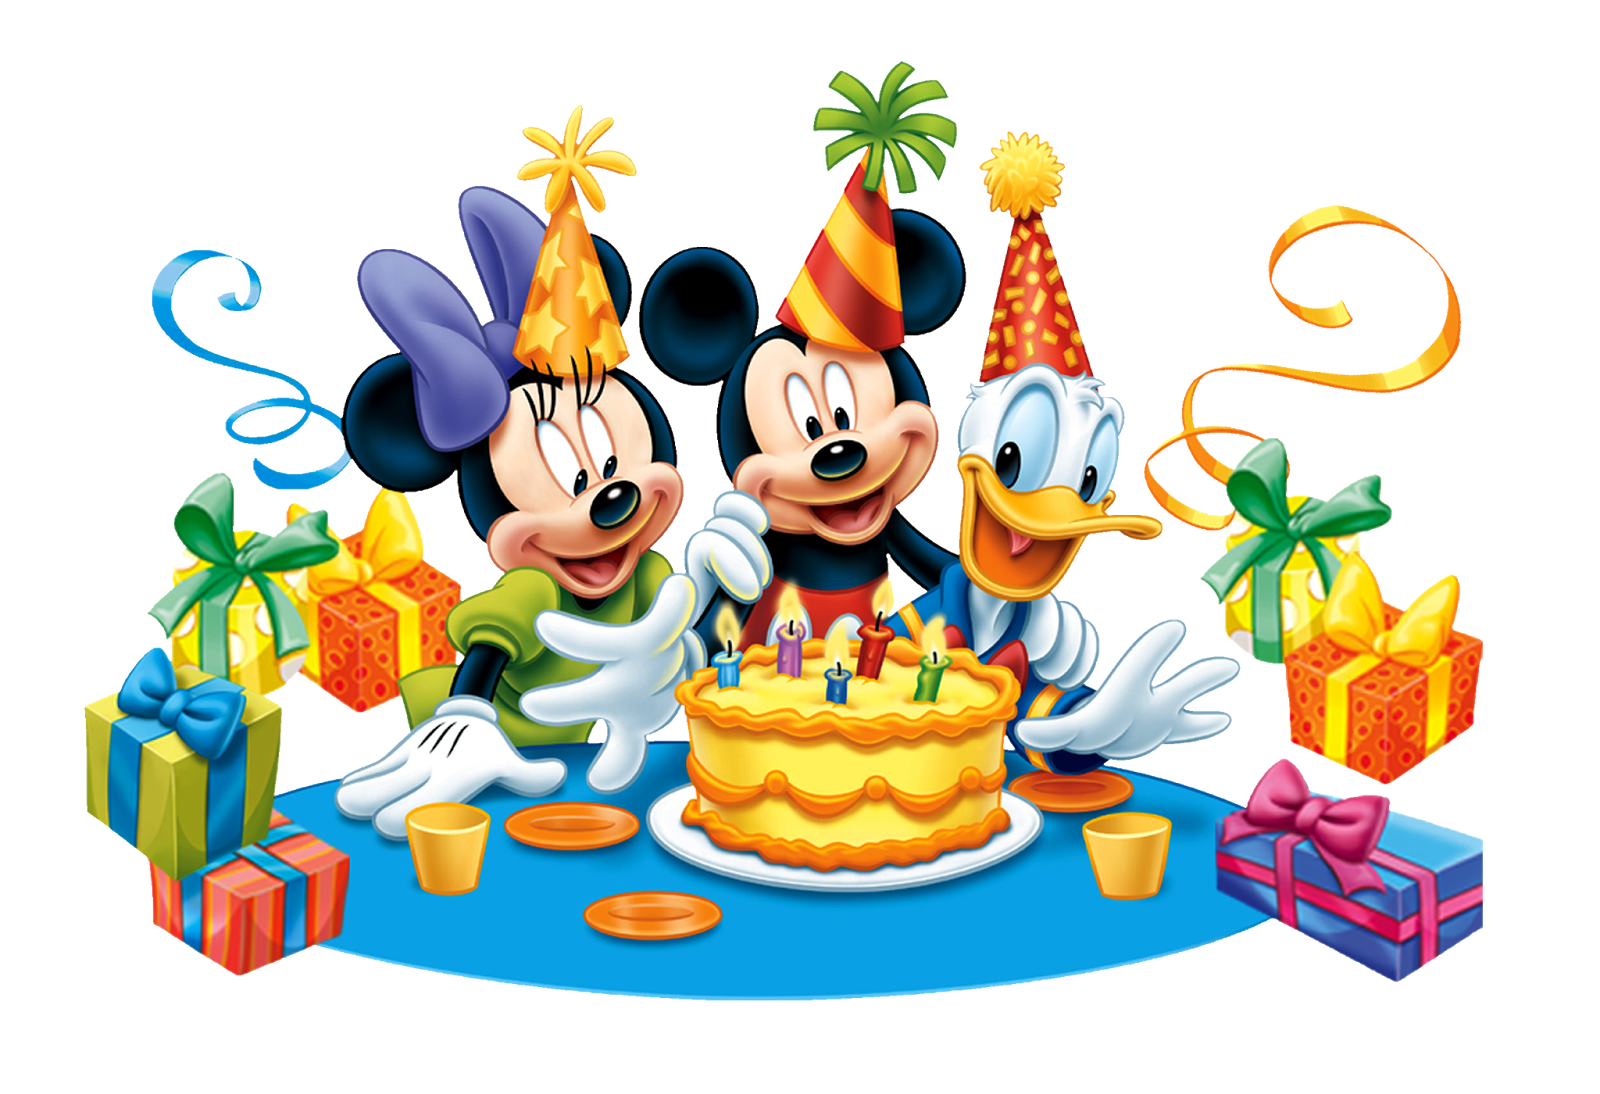 День рождения 4 февраля. День рождения Микки Мауса (Mickey Mouse Birthday). С днём рождения ребёнку. Картина с днём рождения. Детская открытка с днем рождения.